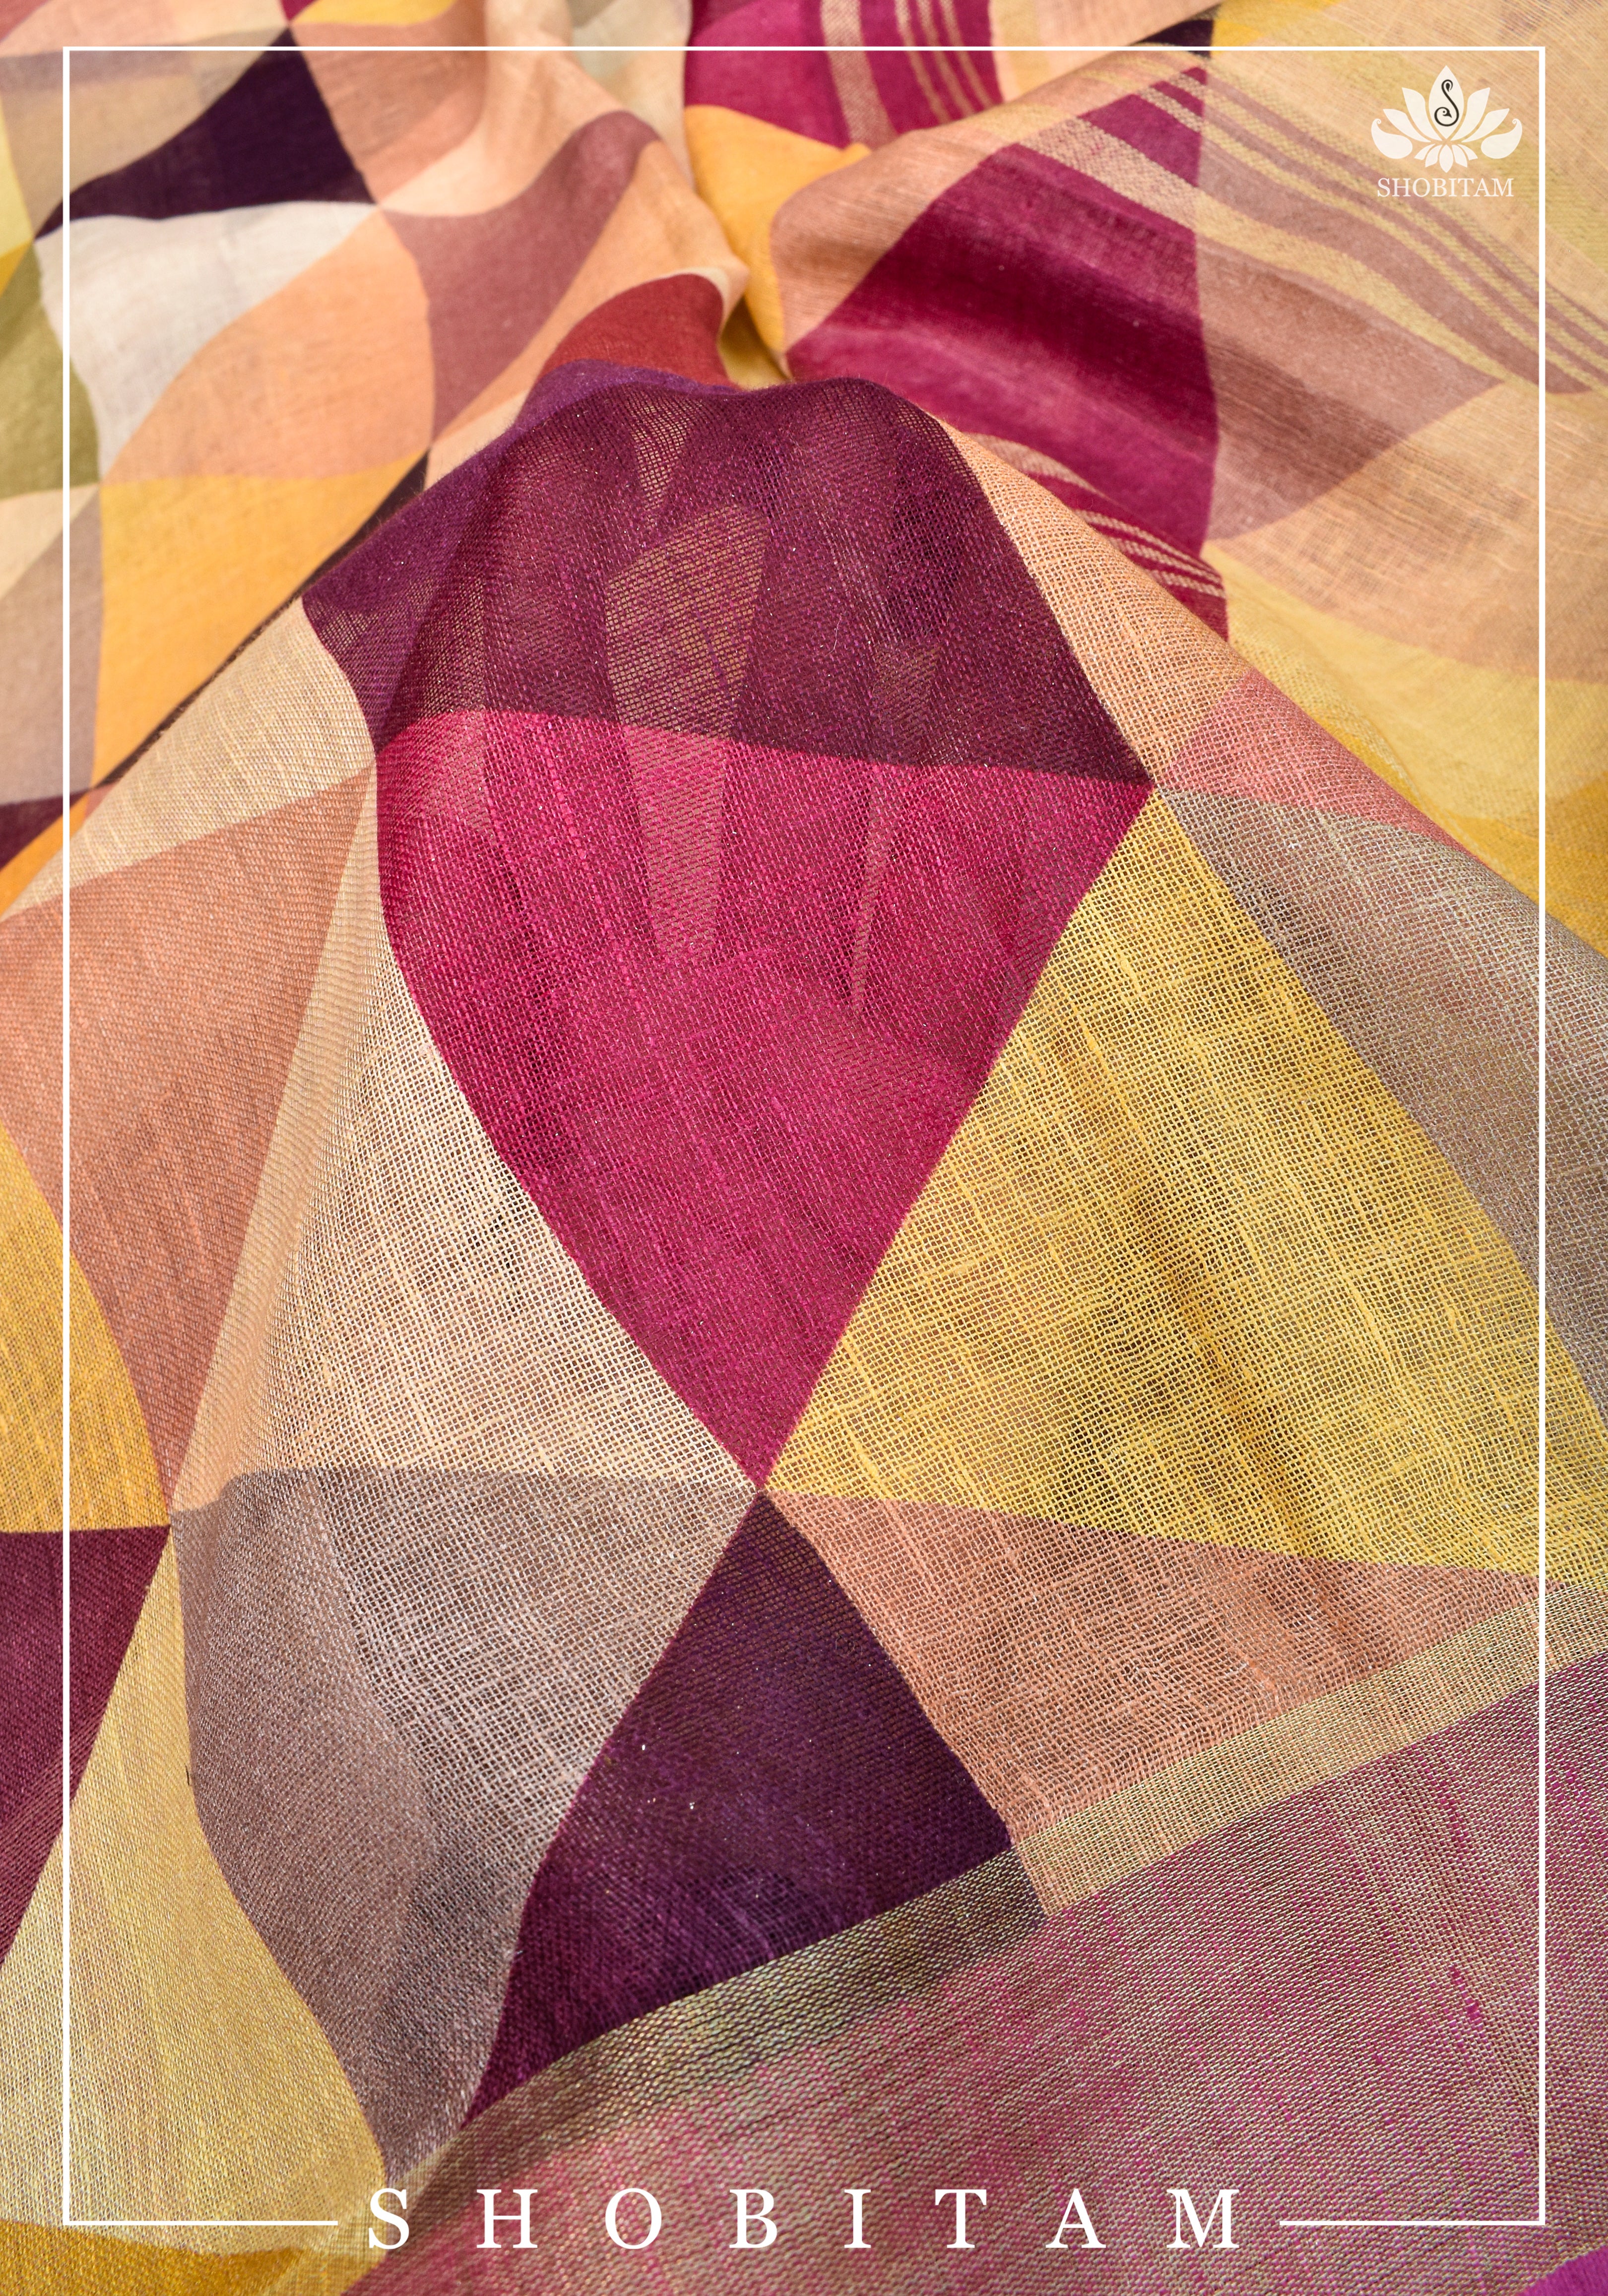 Pretty Shobitam Designer Multicolor Geometric Print Linen Saree with Zari Border